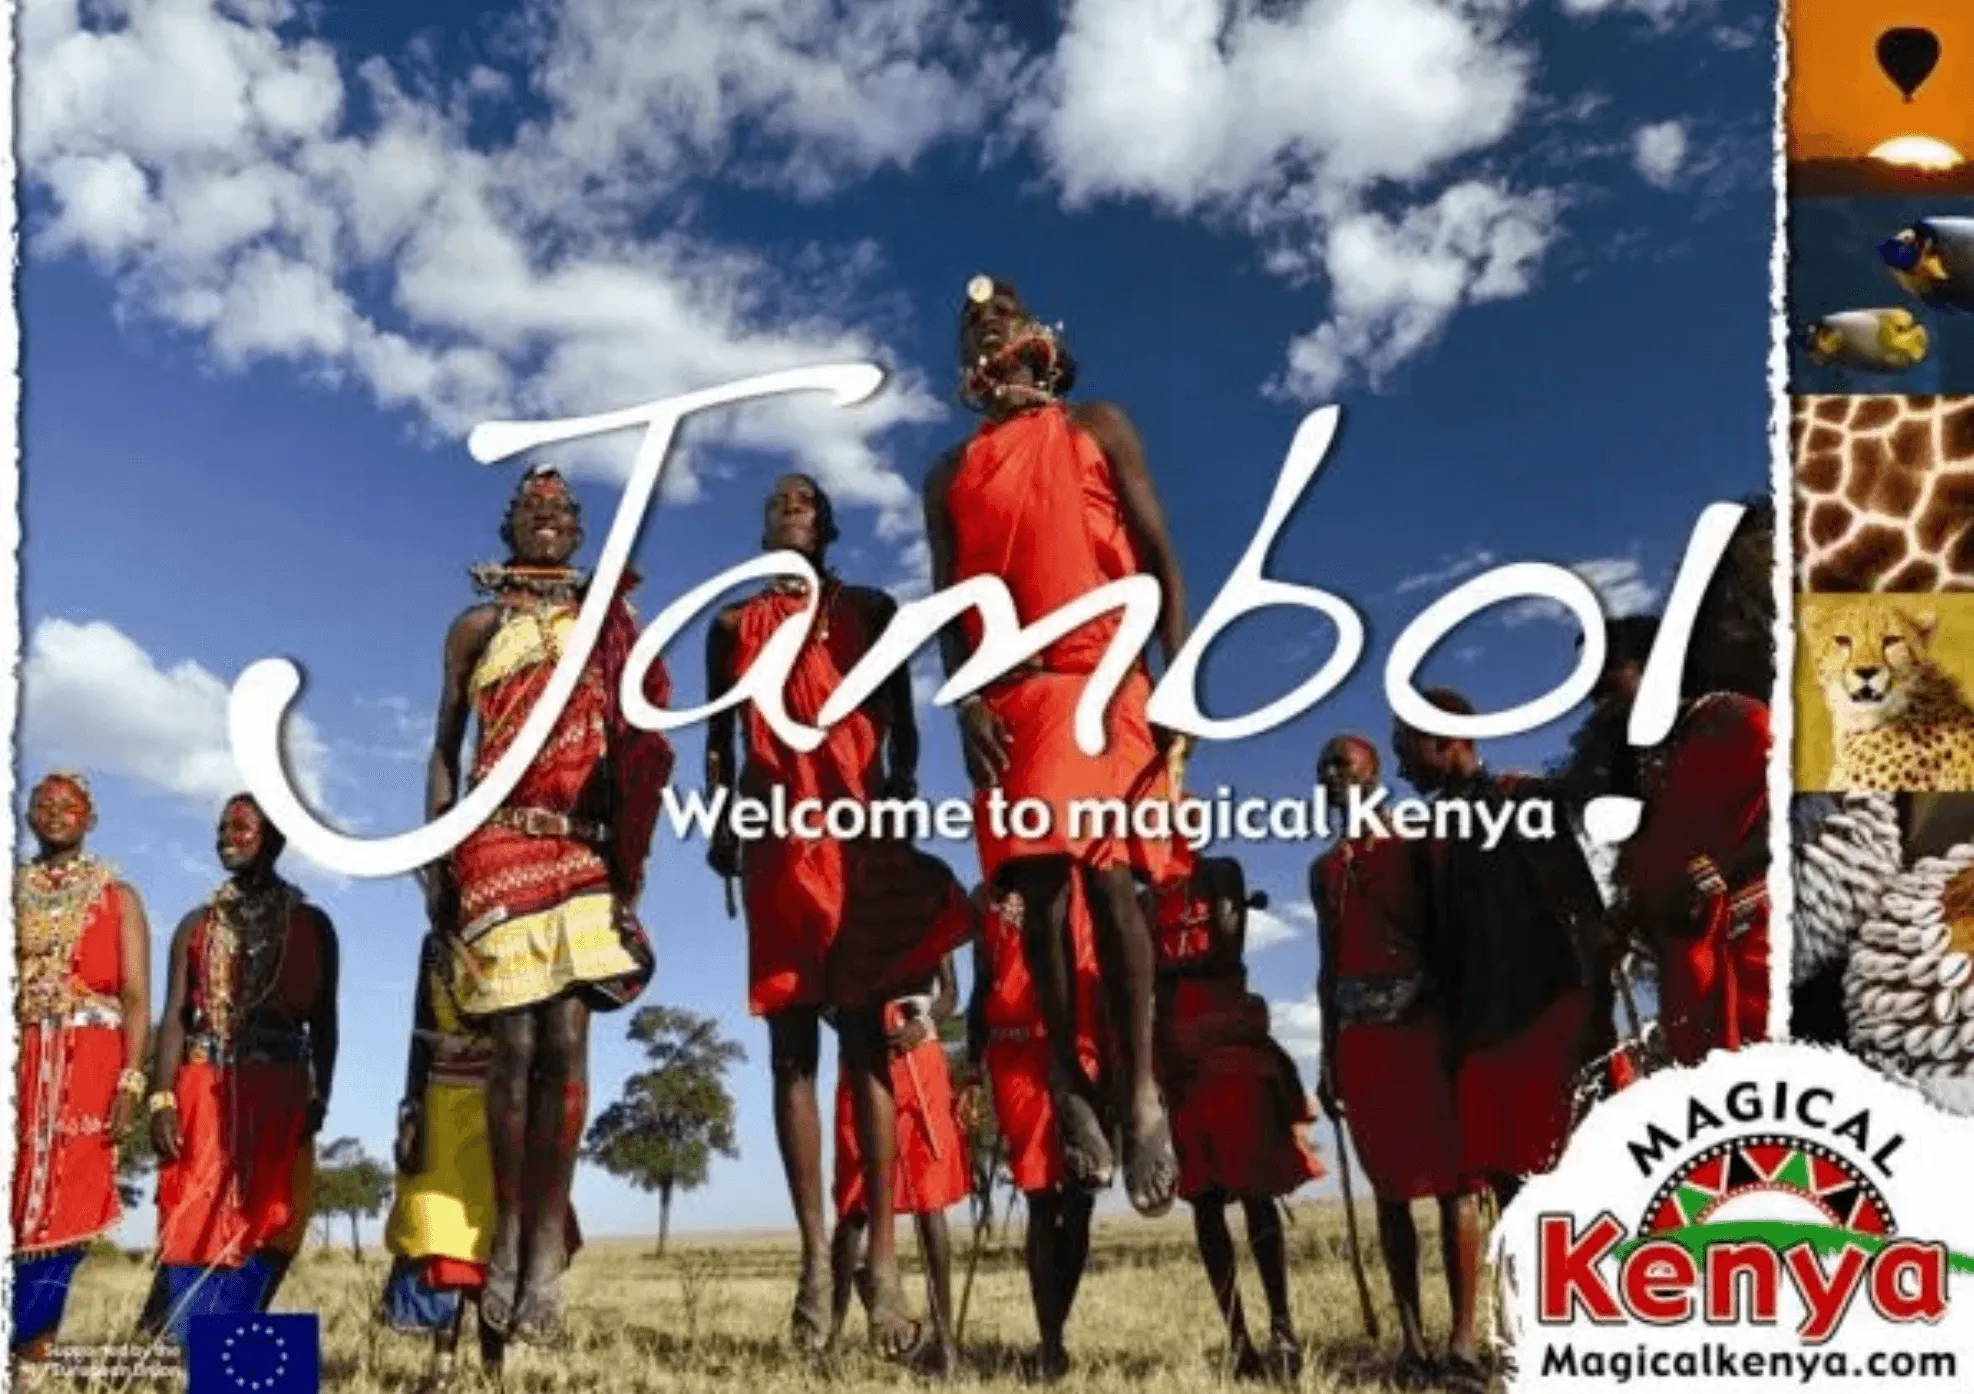 Campagne de marketing réalisée par Magical Kenya en 2017